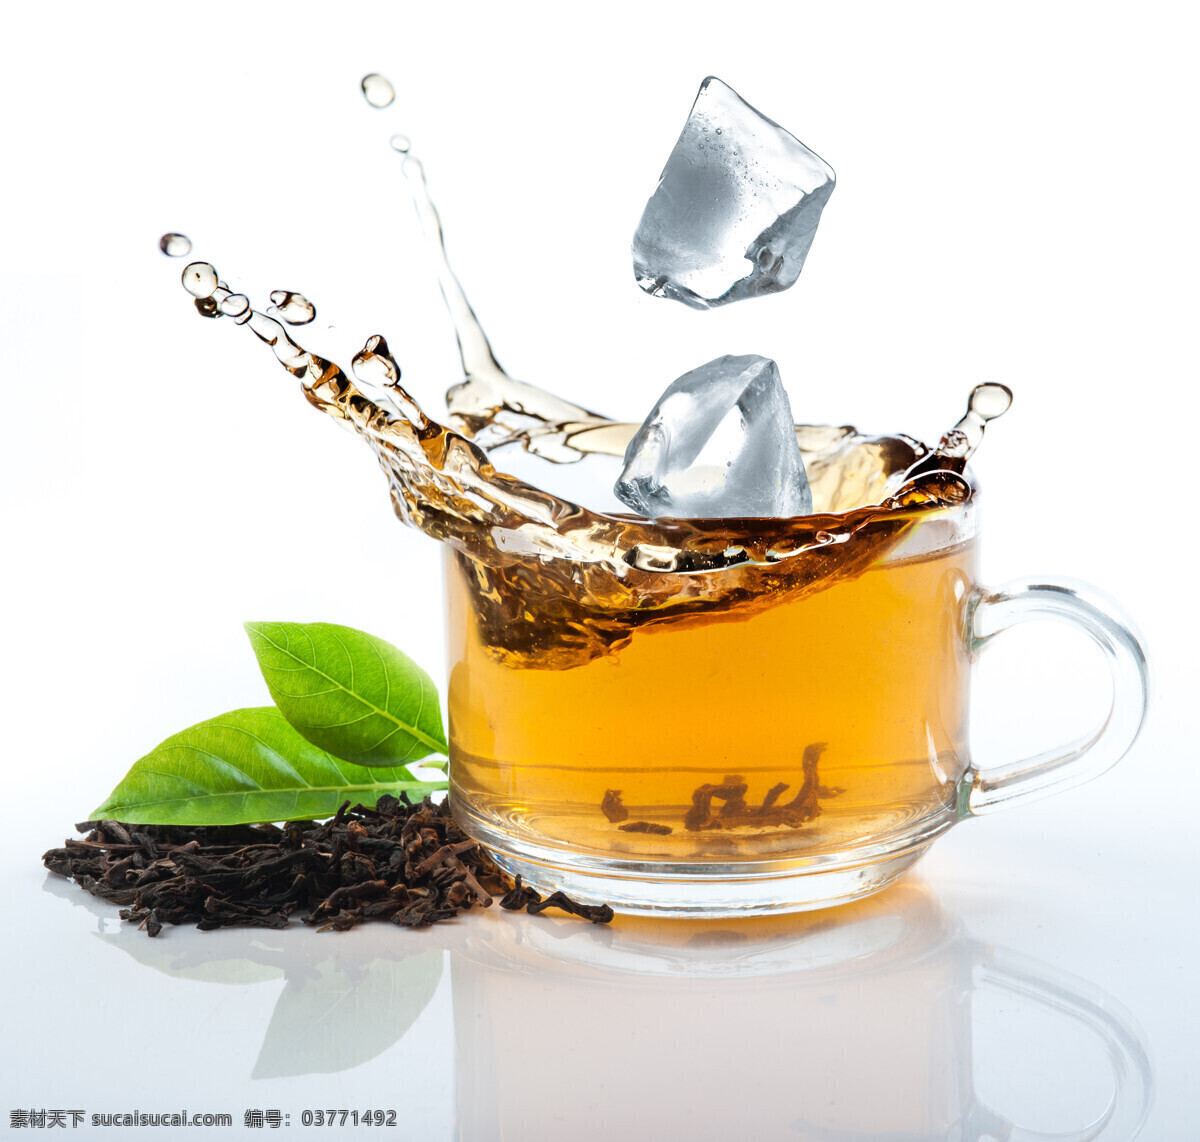 冰红茶 创意 茶叶 冰块 红茶 茶水 生活百科 餐饮美食